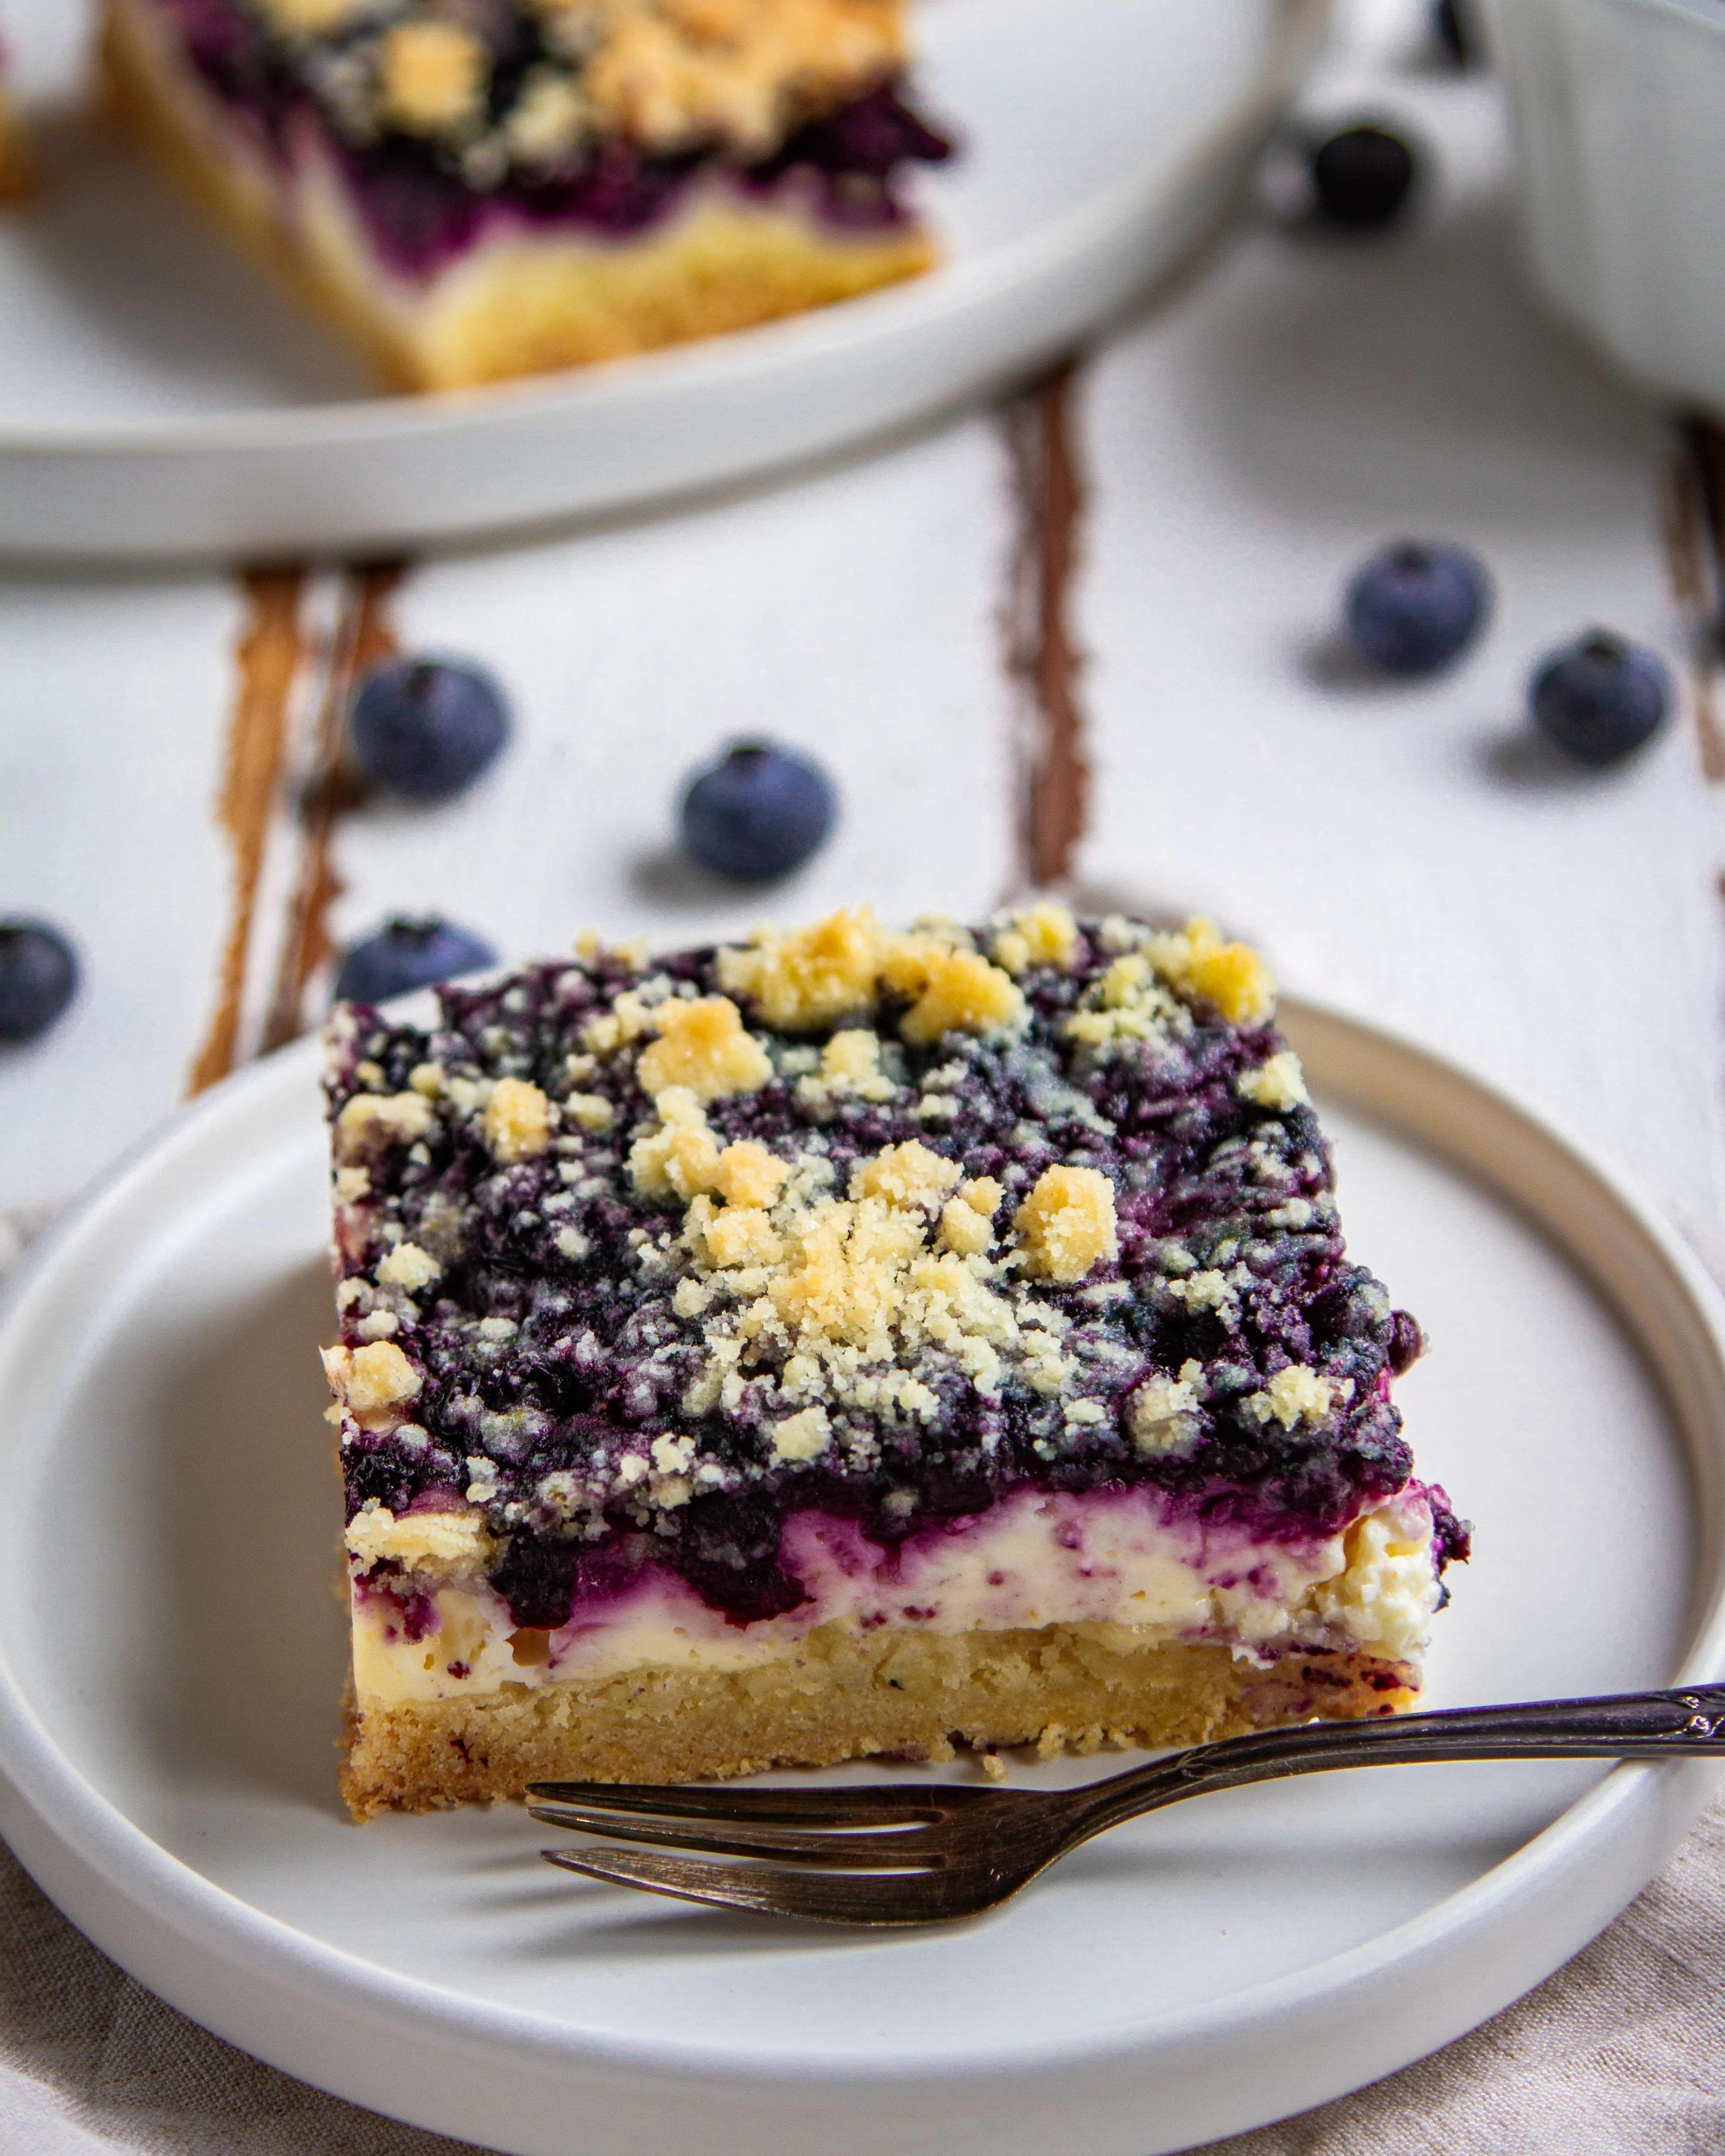 Blaubeer-Streuselkuchen mit Quark - Tinas Küchenzauber | Rezept ...